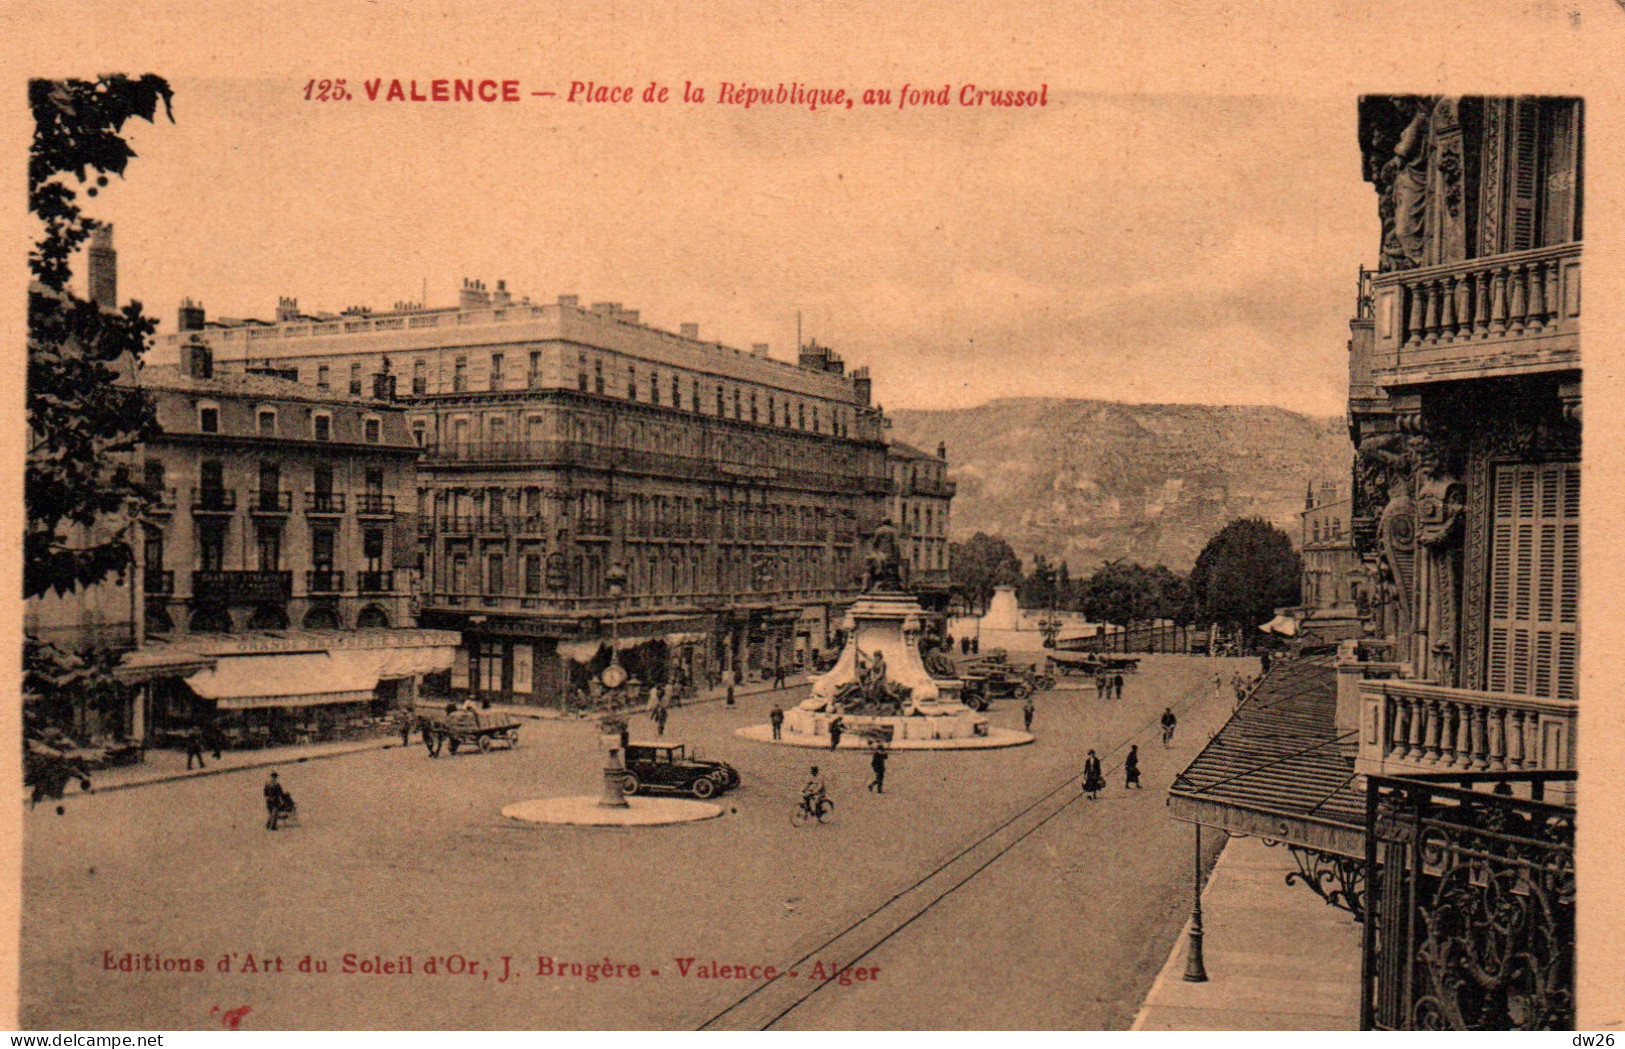 Valence - Place De La République, Au Fond Crussol - Editions D'Art Du Soleil D'Or - Carte N° 125 Non Circulée - Valence